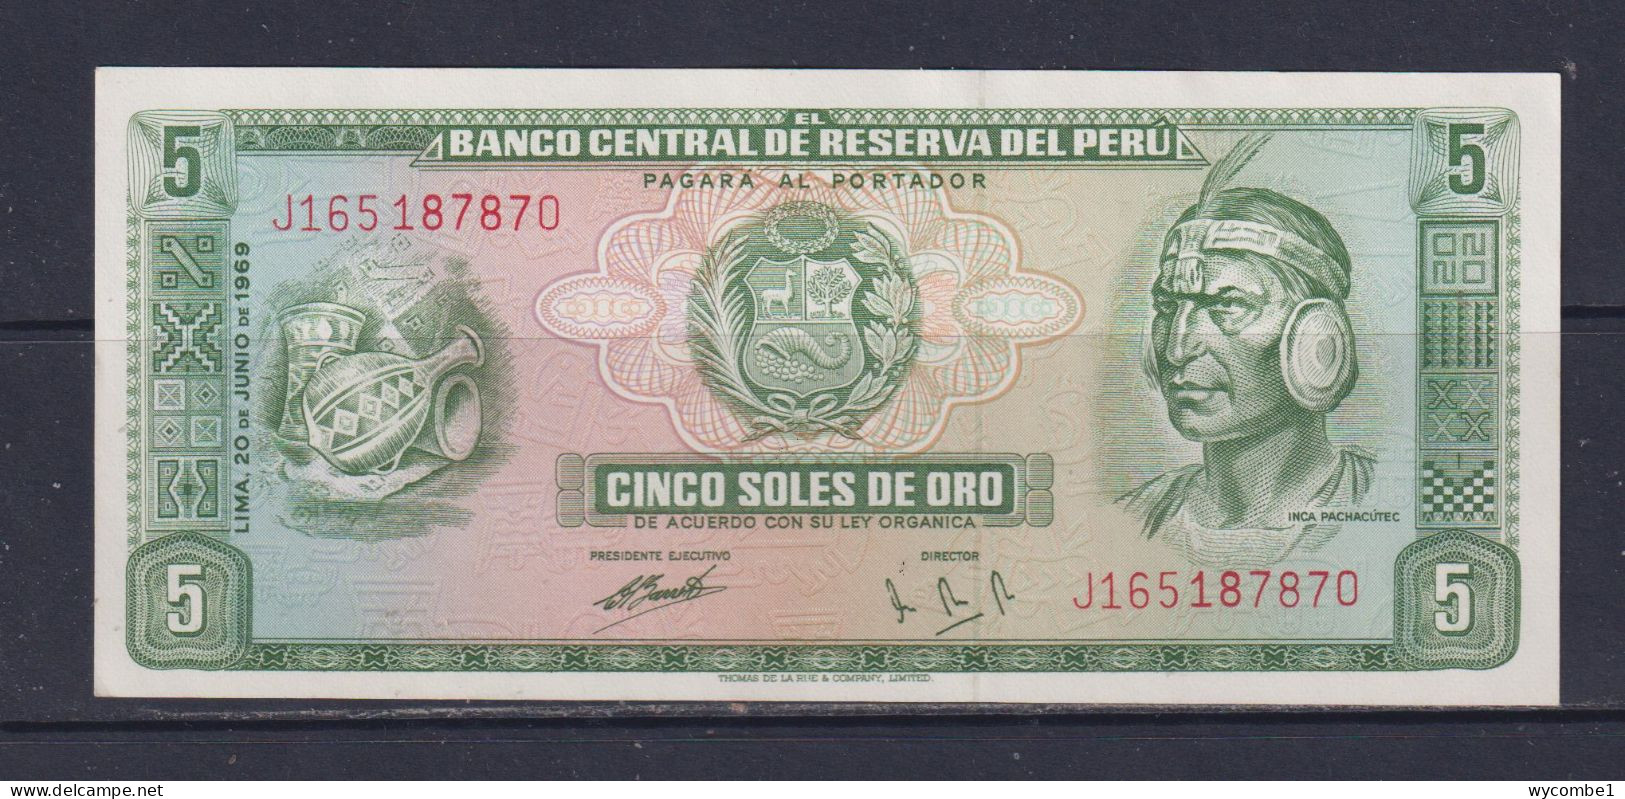 PERU -  1969 10 Sols UNC/aUNC  Banknote - Perù